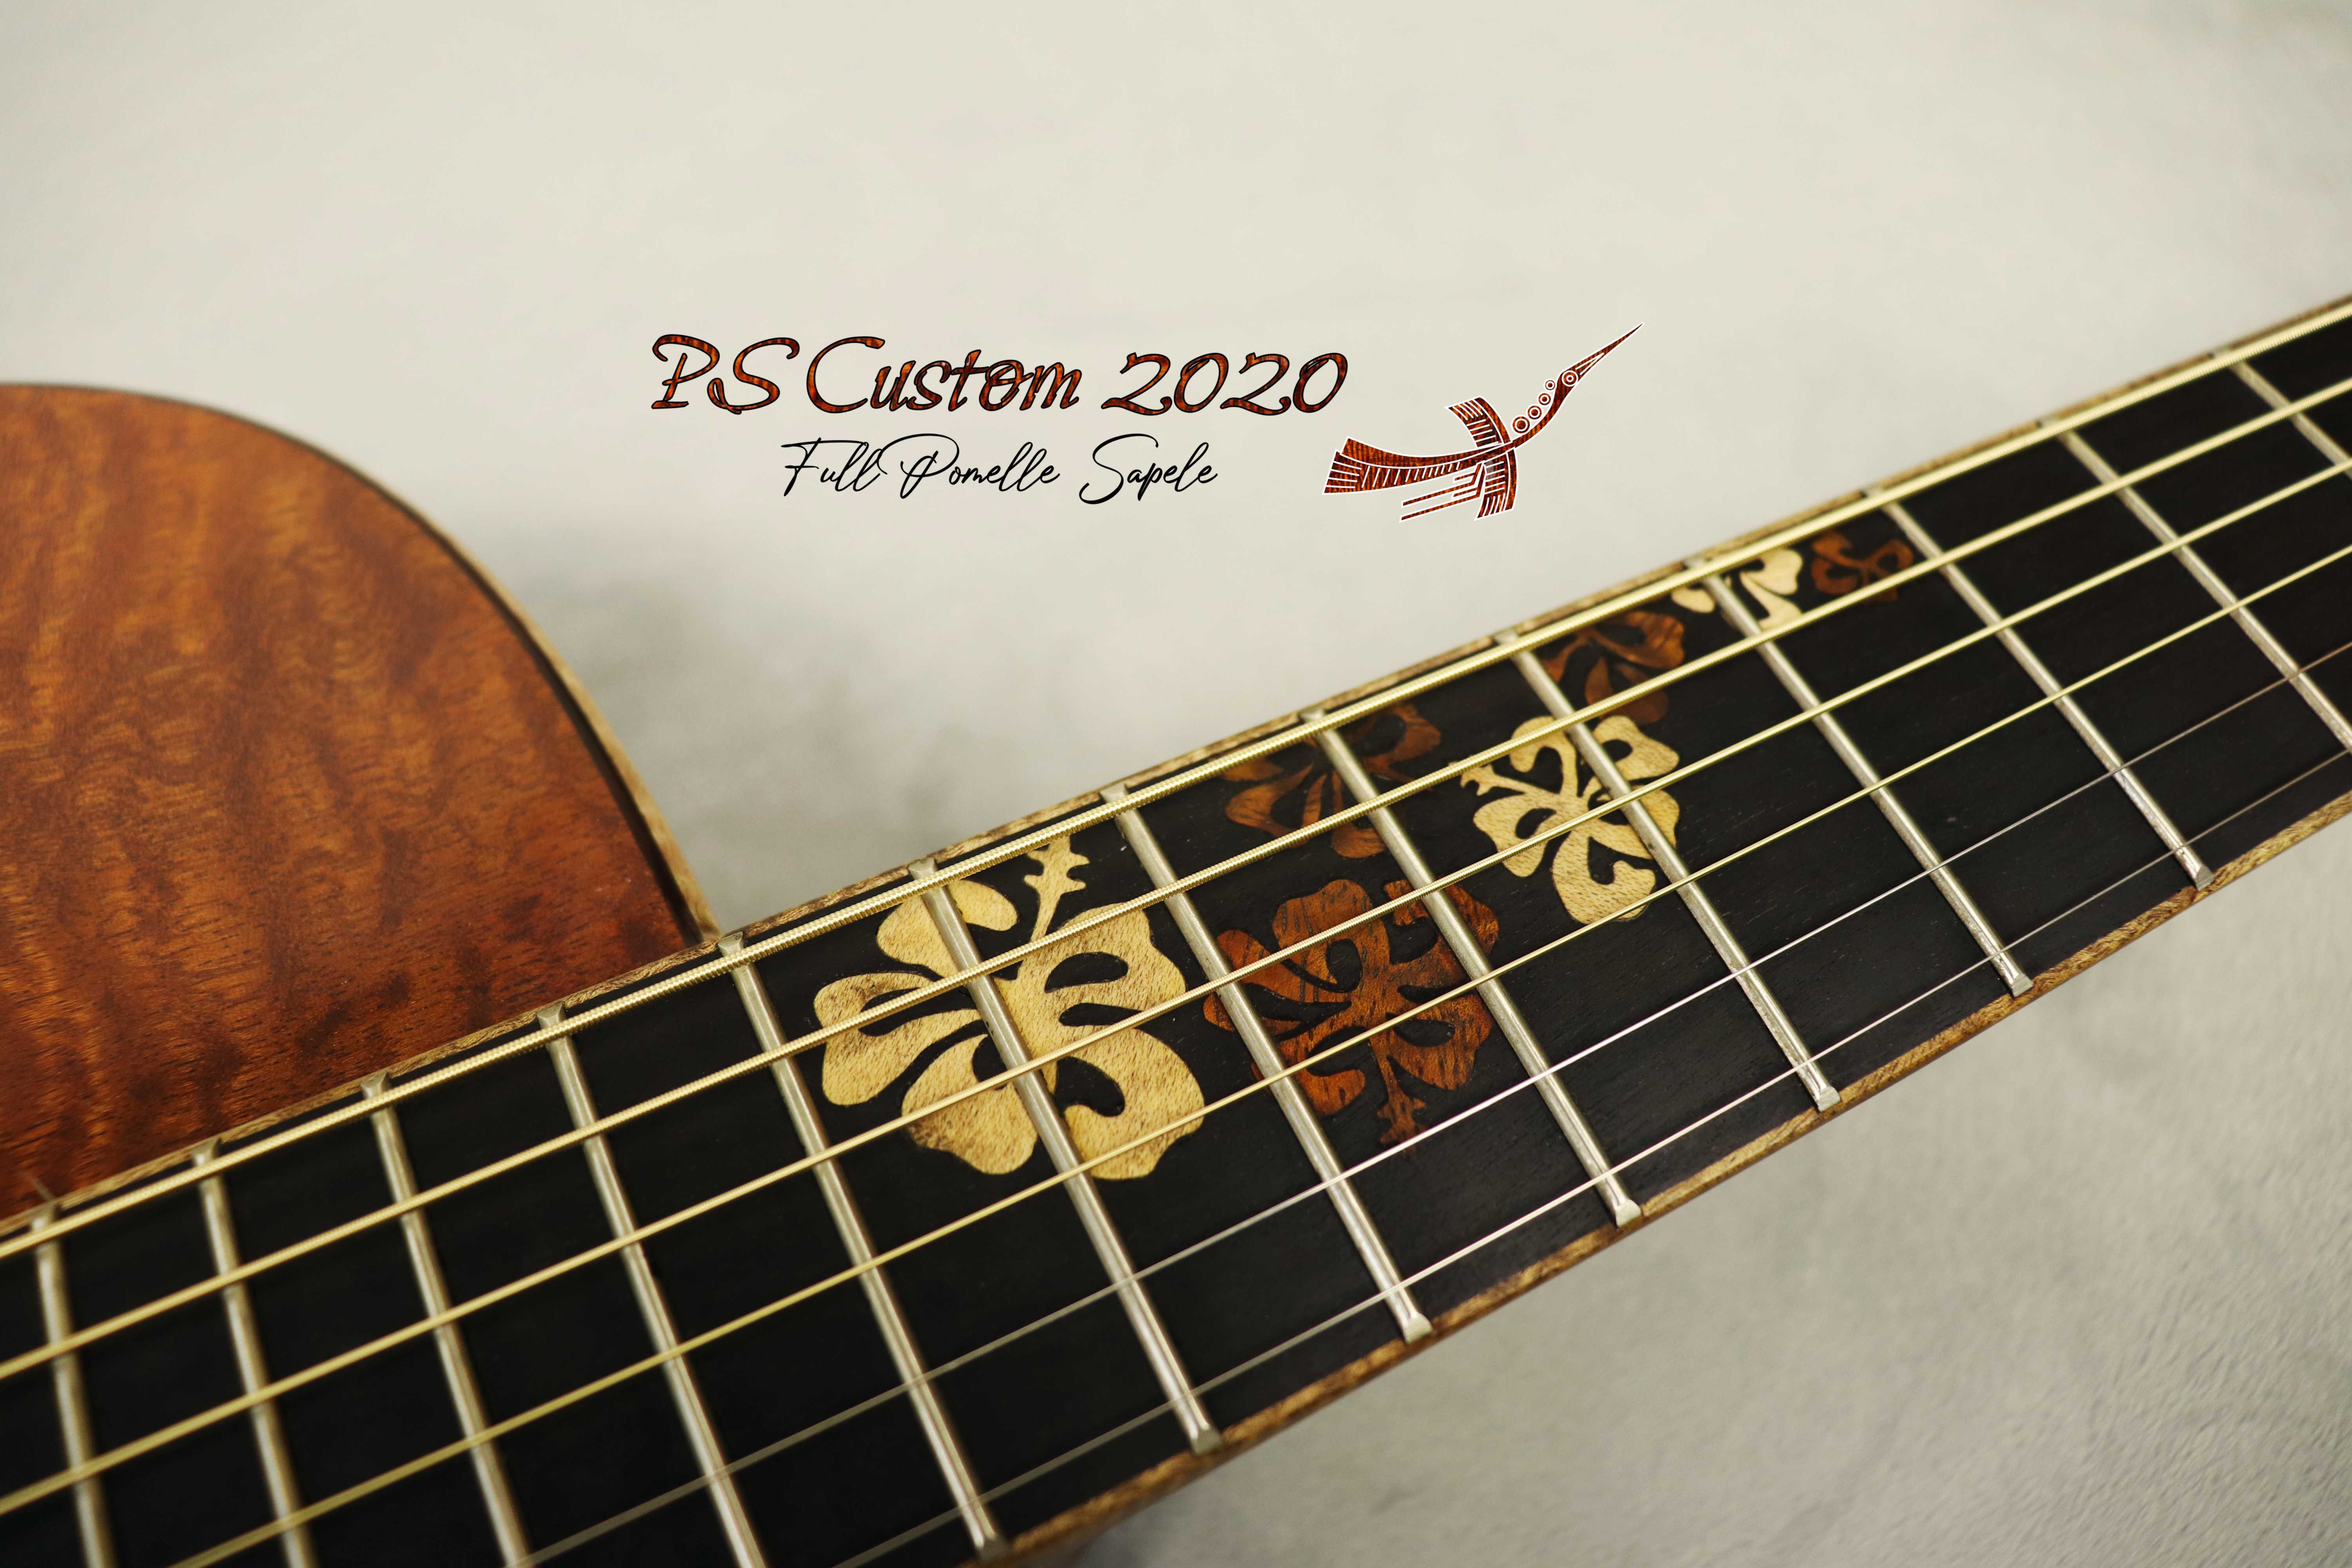 PS Custom Full Pomelle Sapele 2020